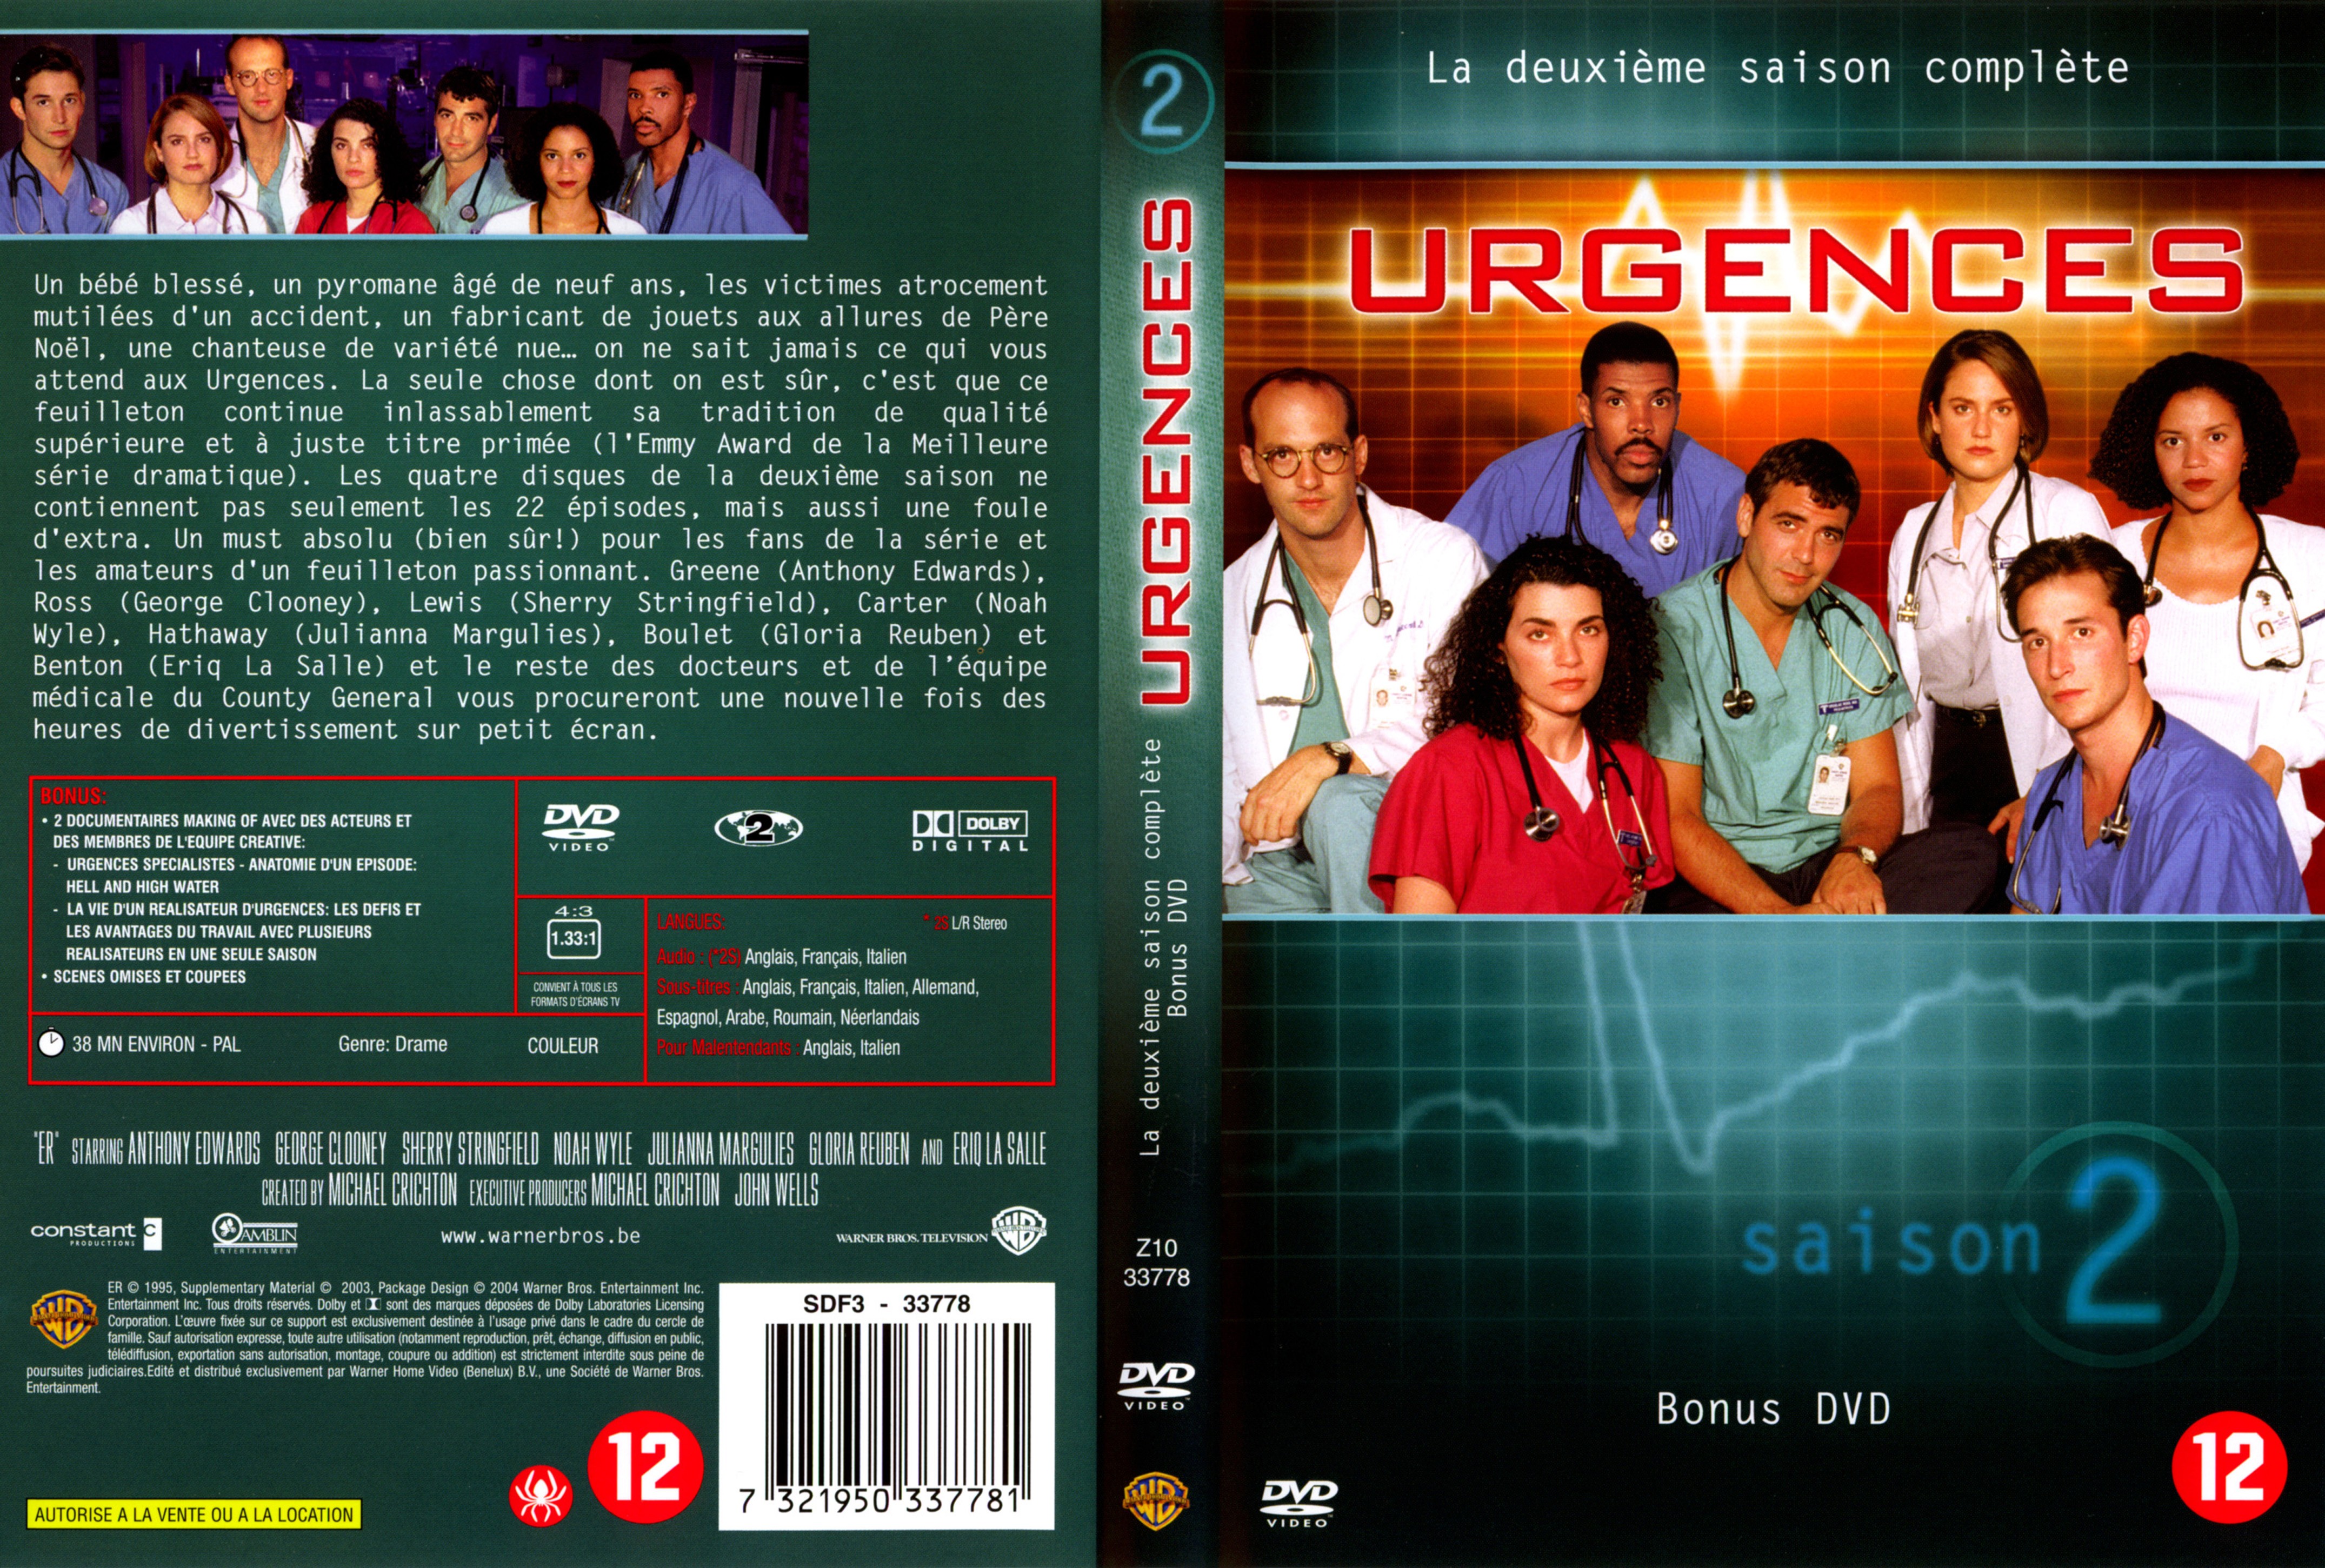 Jaquette DVD Urgences saison 2 vol 4